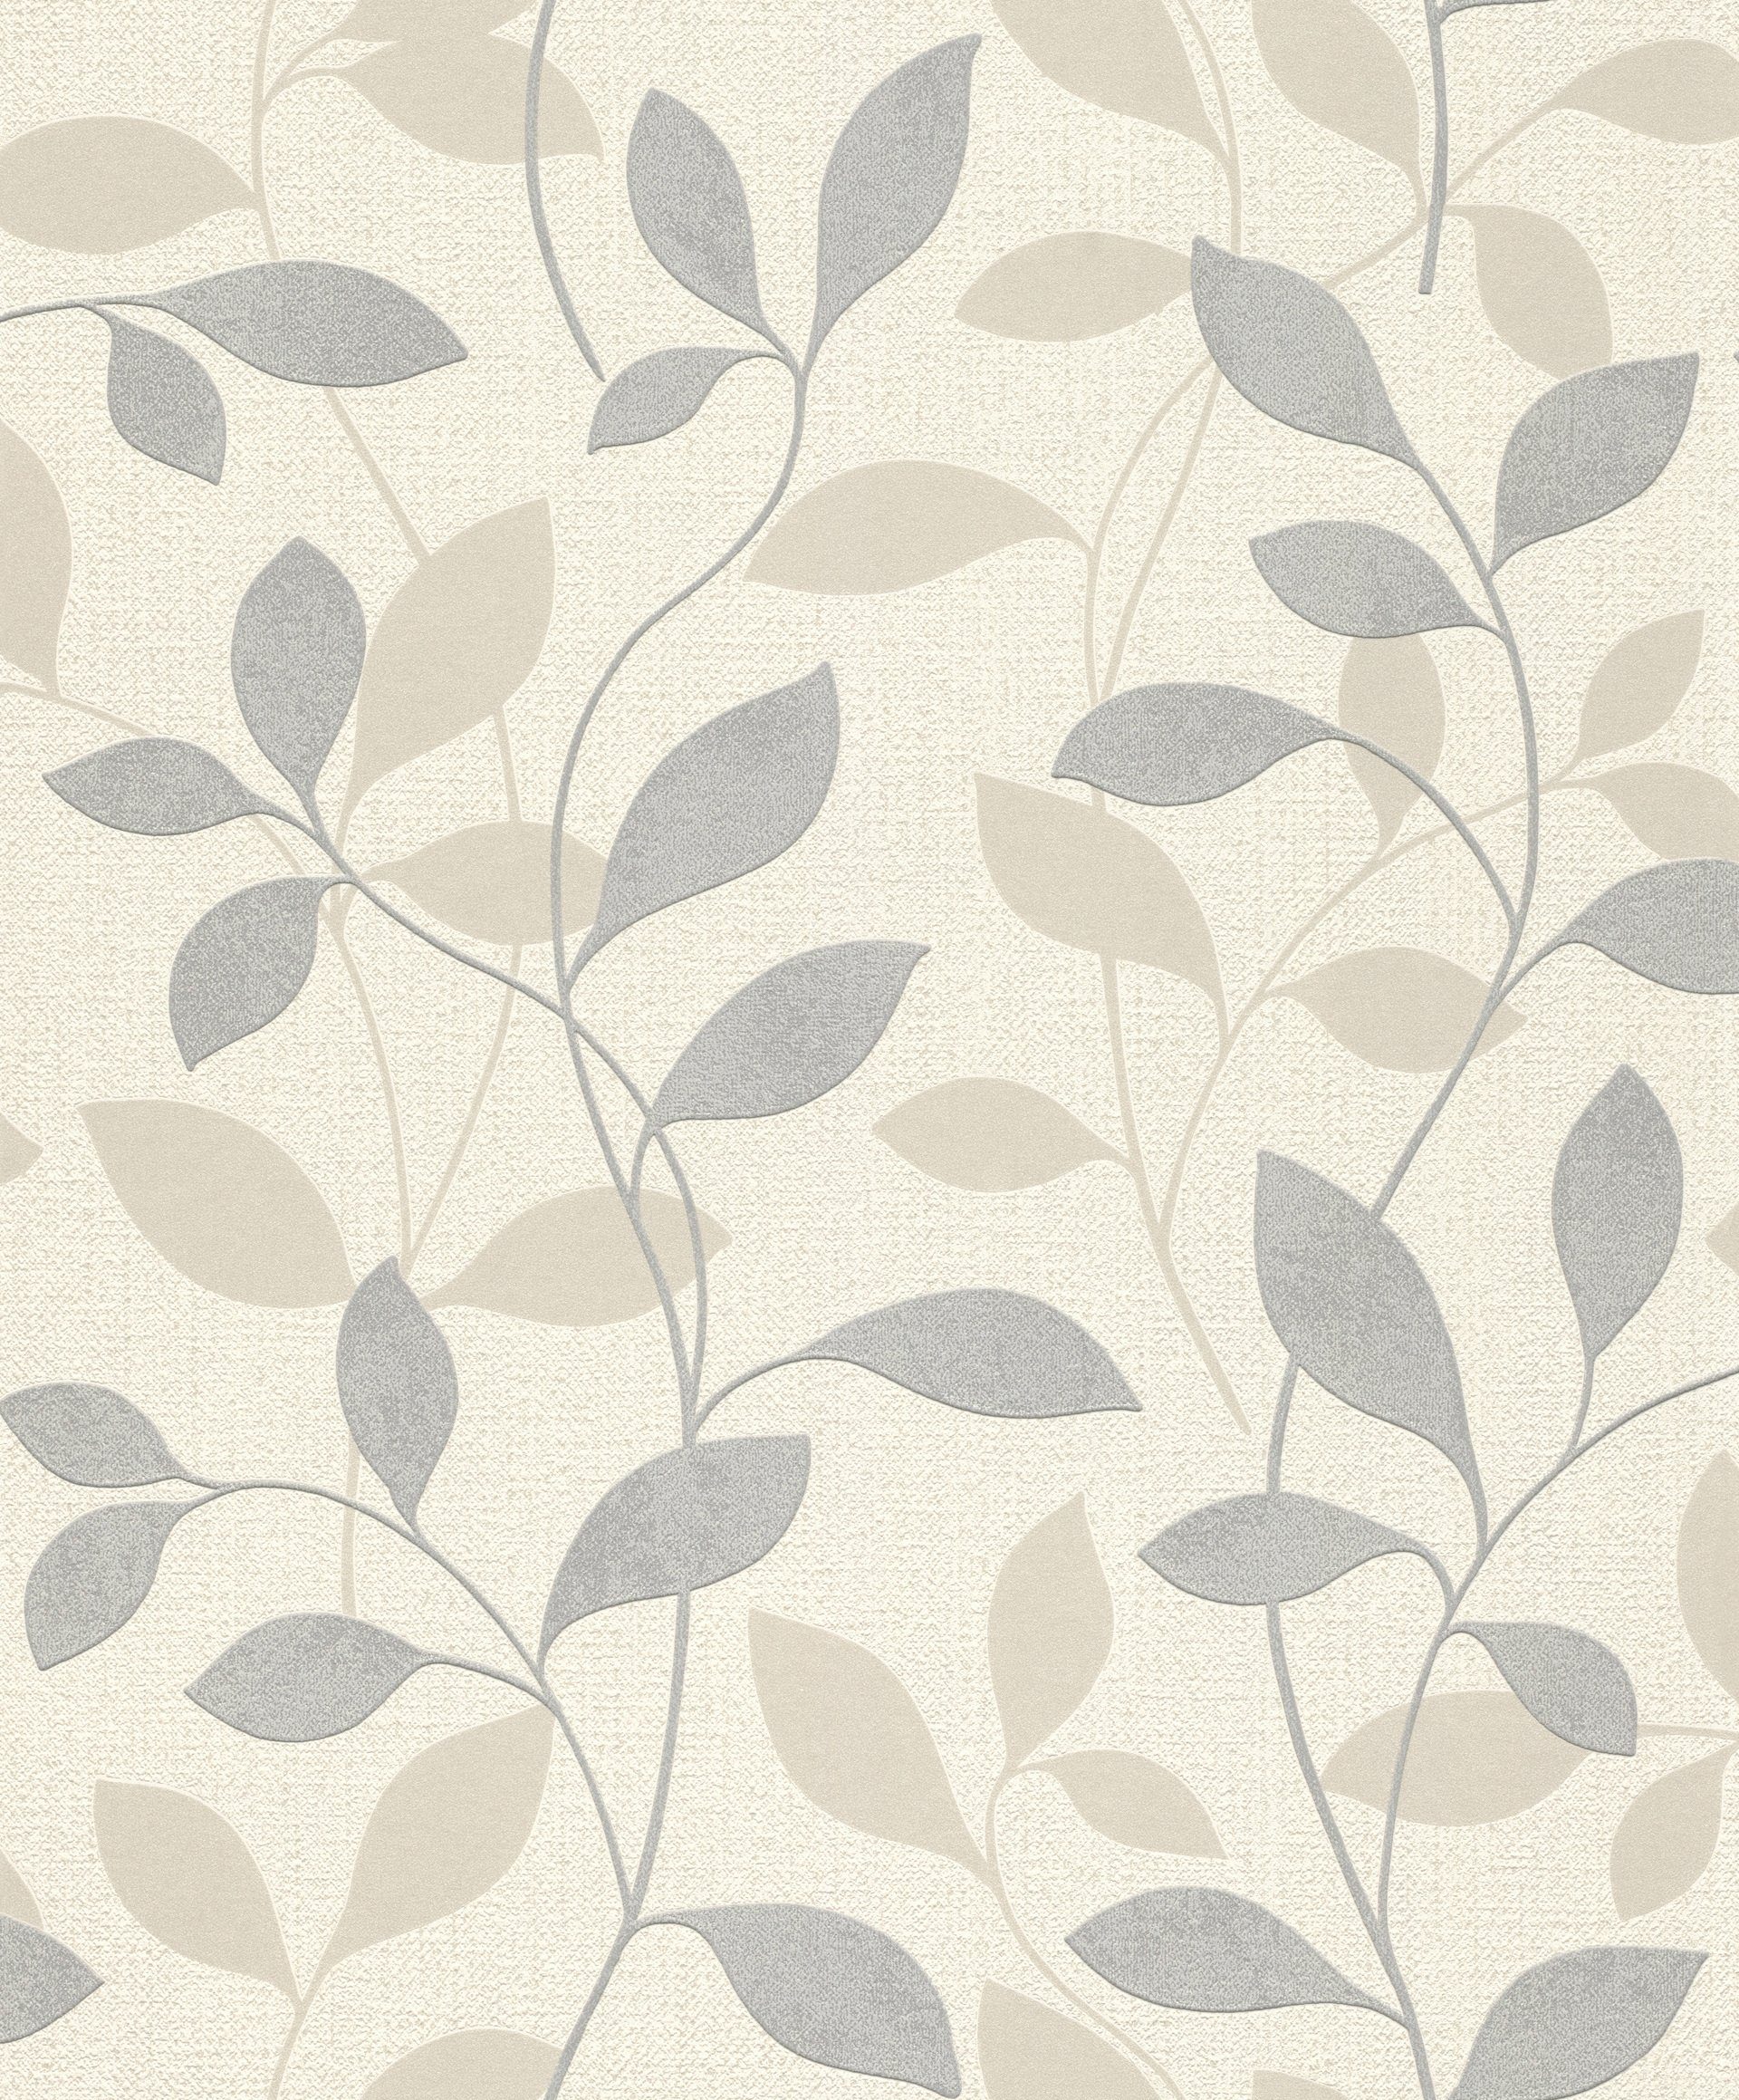 (1 St), Rasch hochwaschbeständig Vliestapete Wand, grau/beige Andy strukturiert, lichtbeständig, floral, gut